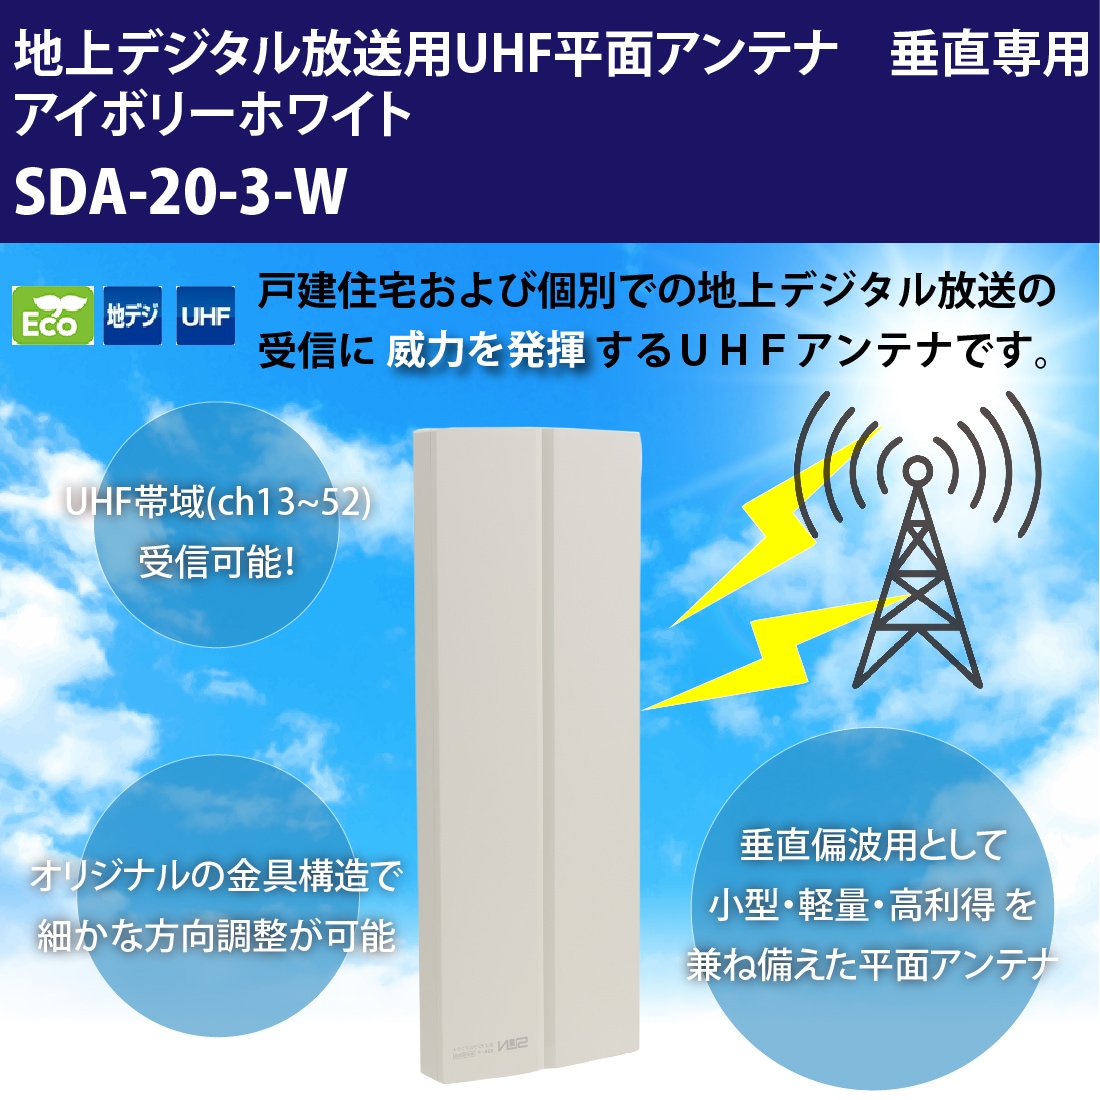 マスプロ地上デジタル用ブースター内蔵UHF平面アンテナ U2SWLA20B-BE